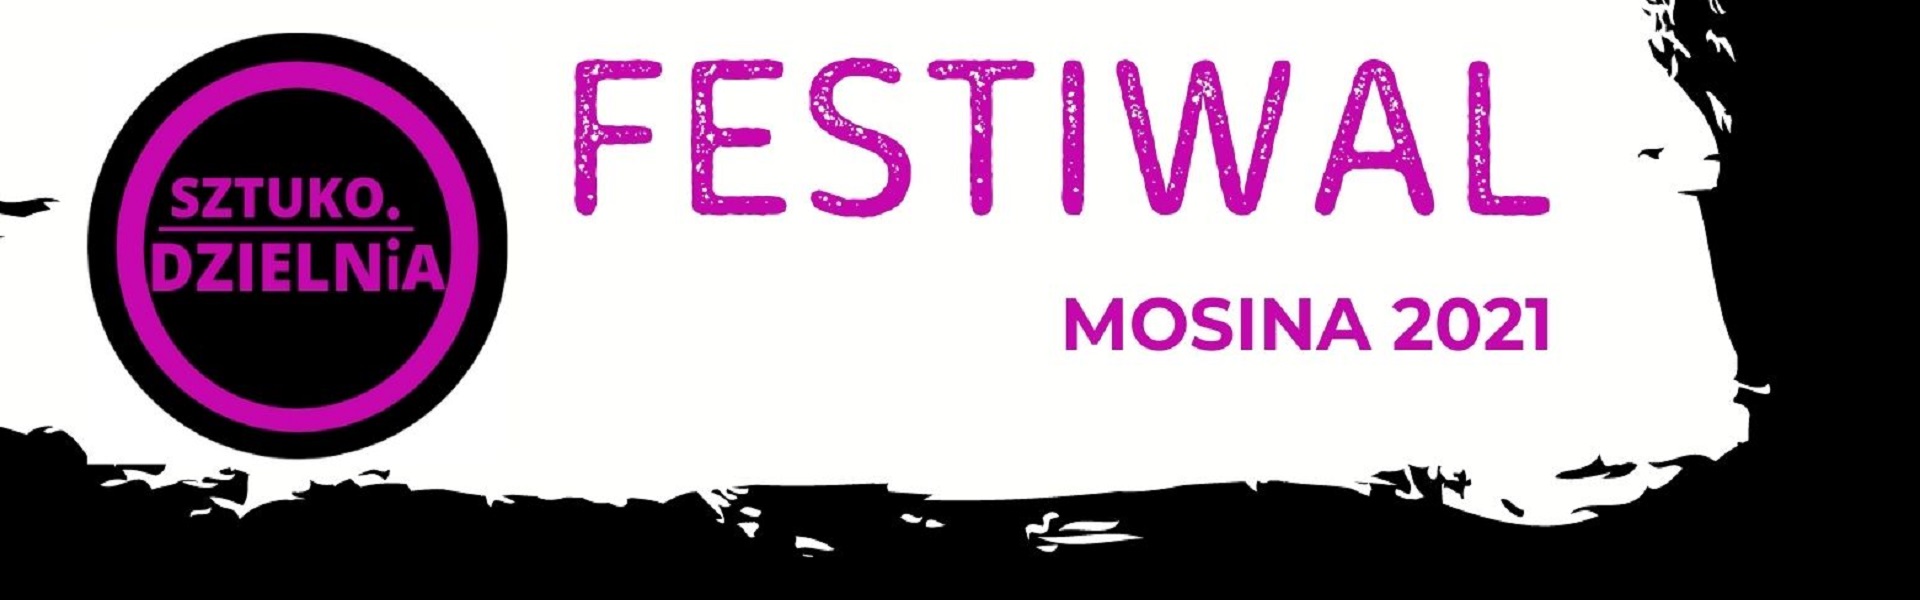 Festiwal Sztukodzielnia 2021_banner